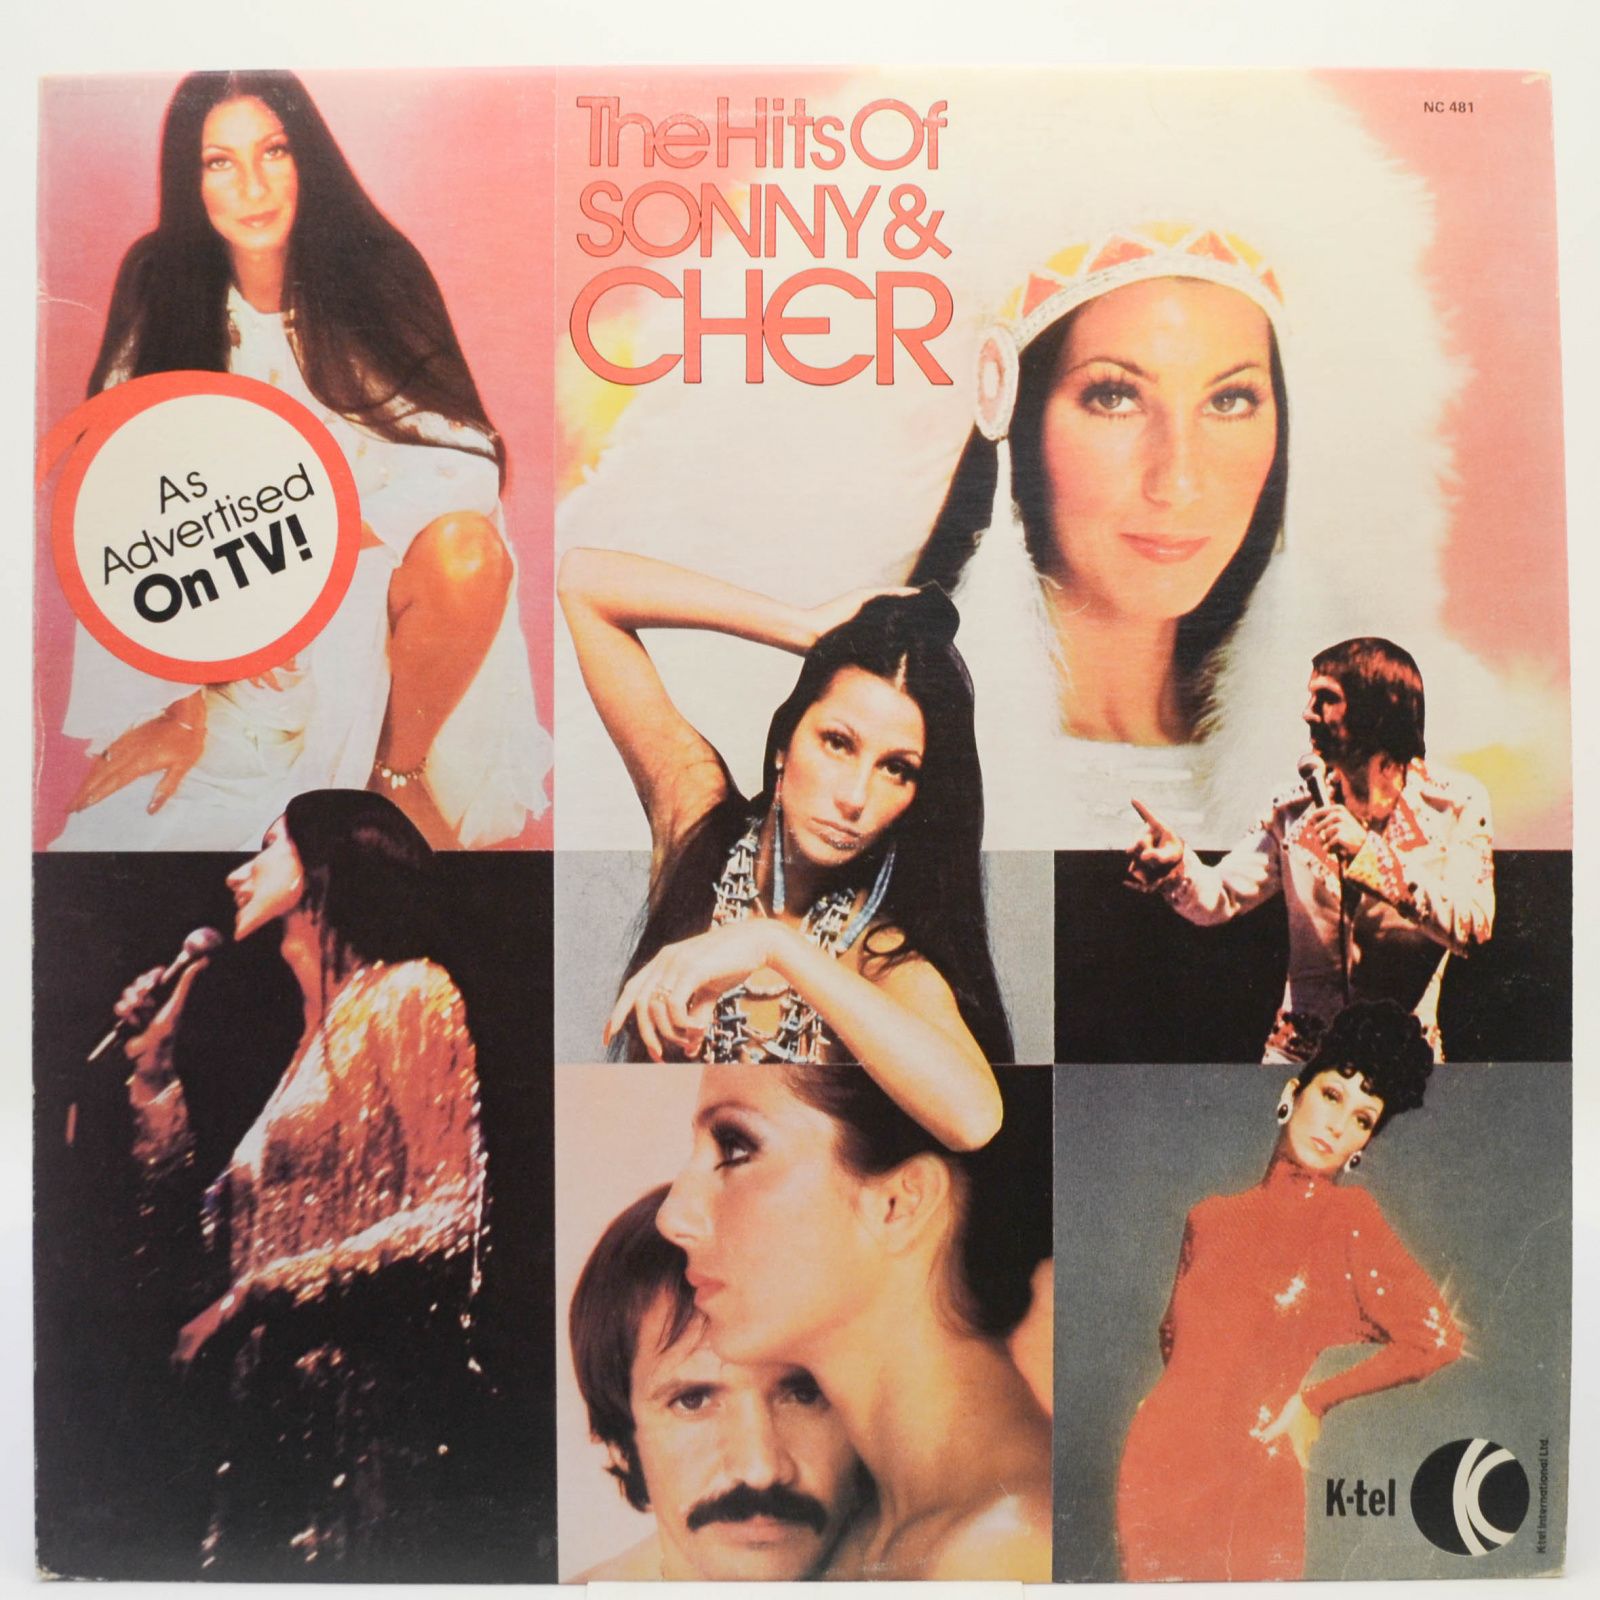 Sonny & Cher — The Hits Of Sonny & Cher, 1977